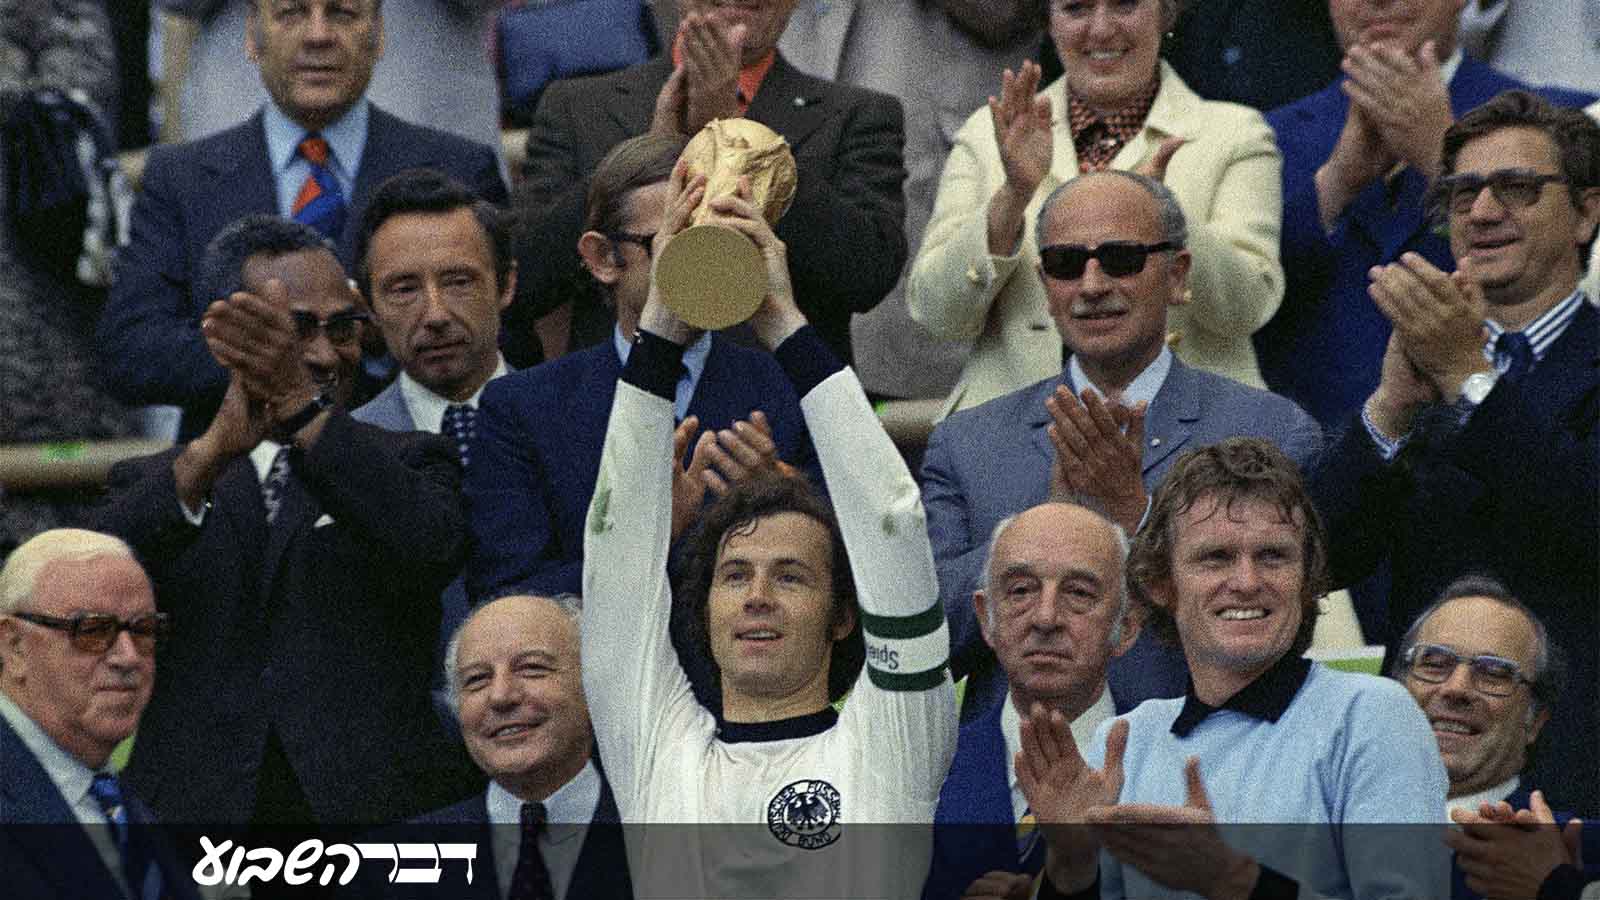 קפטן נבחרת מערב גרמניה פרנץ בקנבואר מניף את גביע העולם במונדיאל 1974 לאחר הניצחון בגמר 2-1 על נבחרת הולנד (AP Photo)